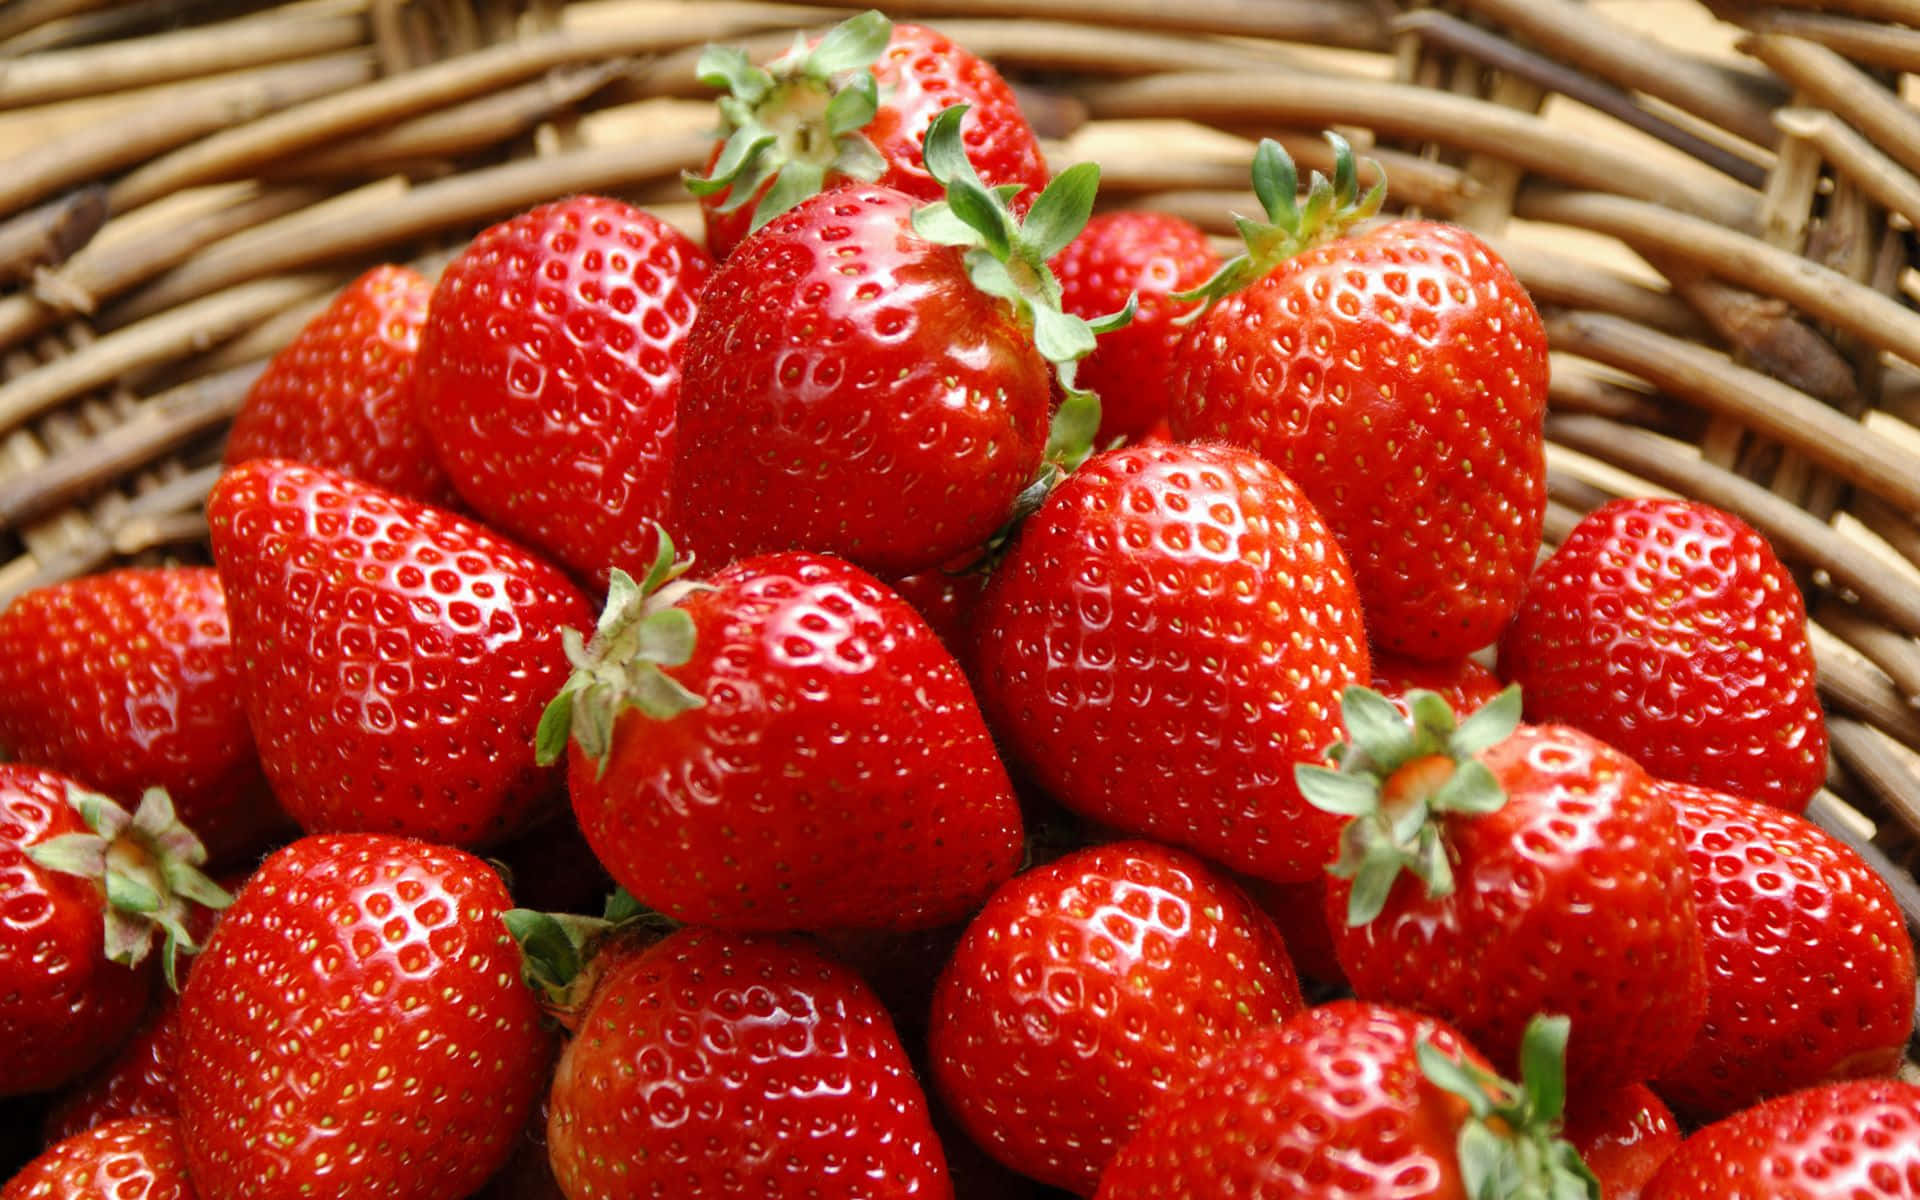 Nyd denne lækre og søde jordbær! Wallpaper